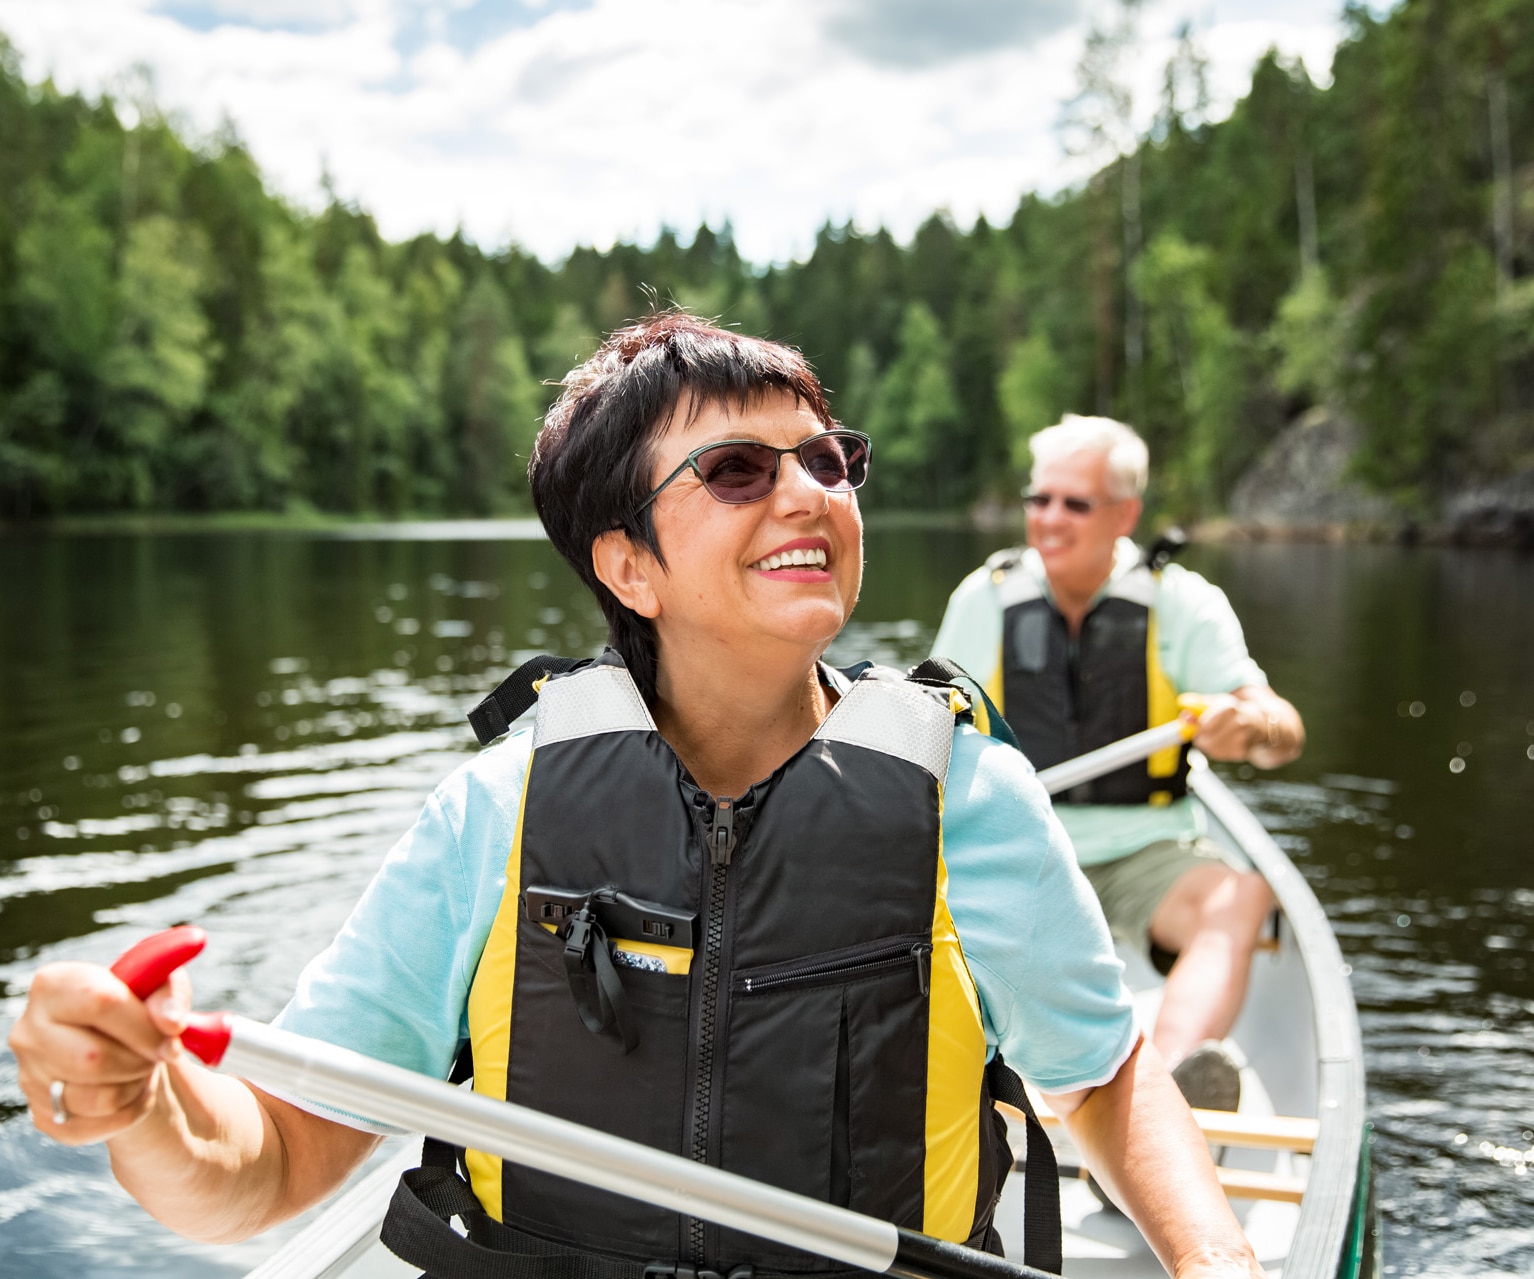 Iloinen aikuinen pariskunta melomassa järvellä pelastusliivit päällään. Aurinkoinen kesäpäivä. Turisteja matkalla Suomessa, seikkailemassa.